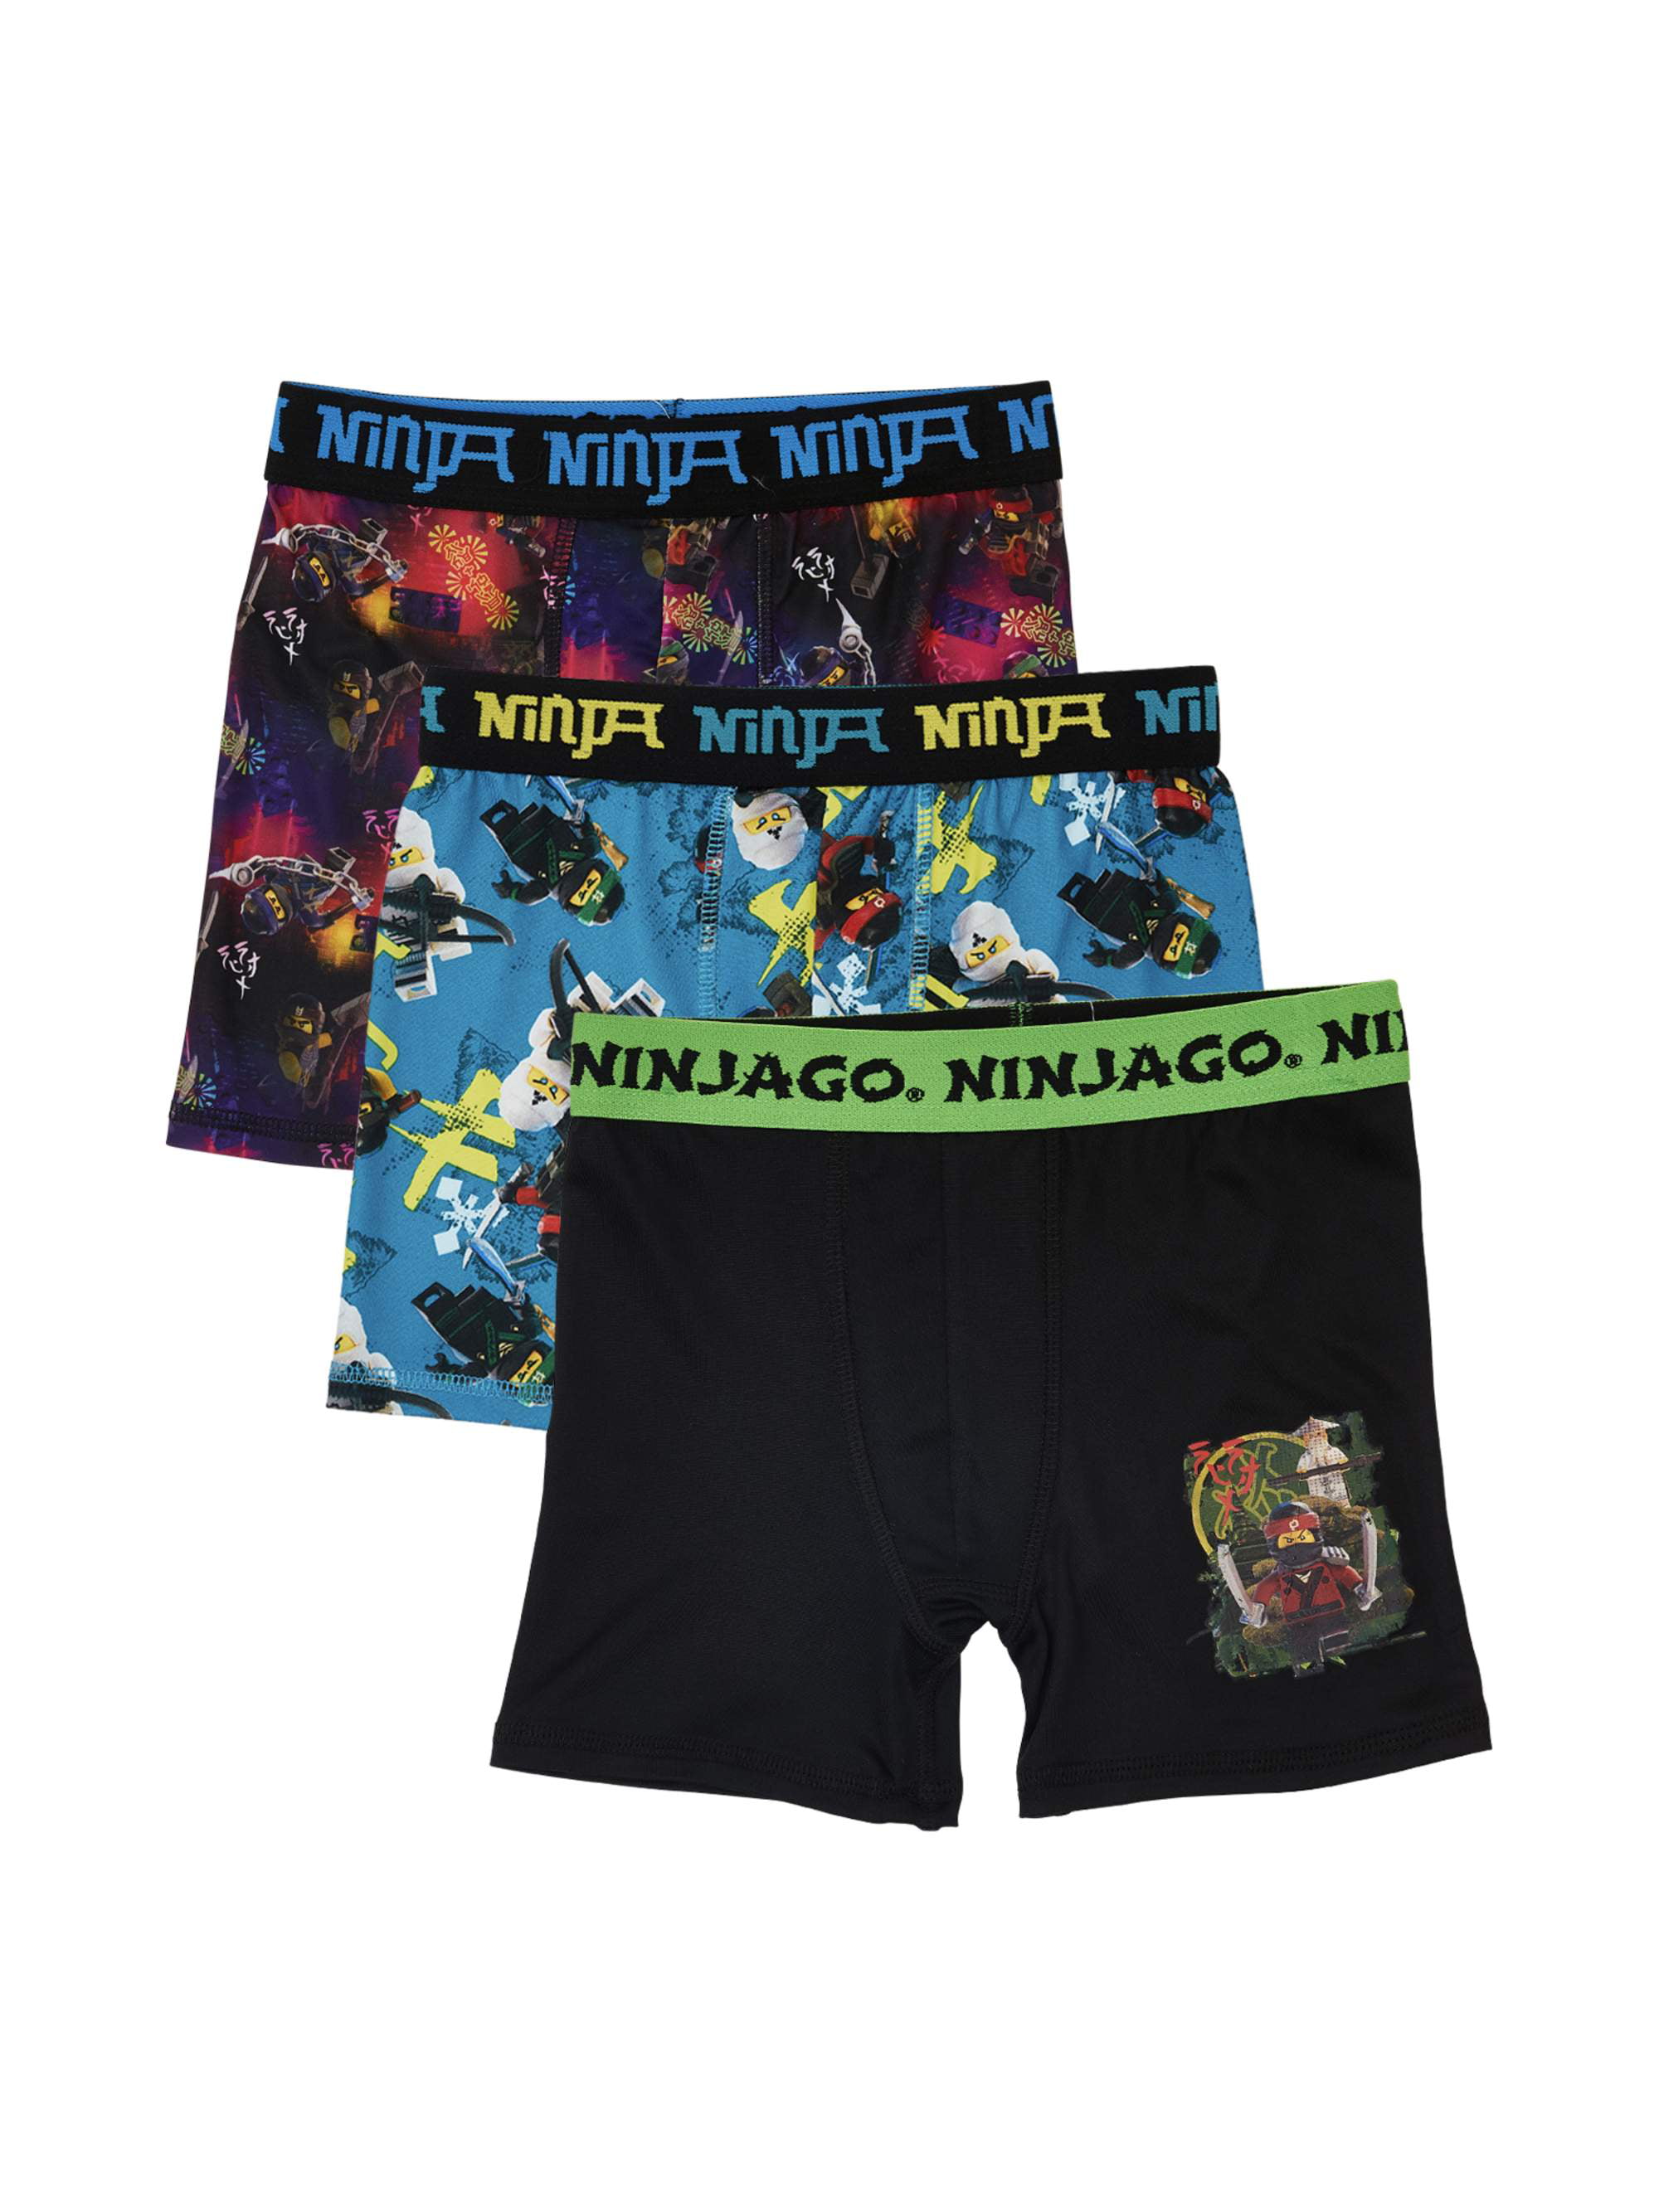 Ninjago the Movie Underwear Underpants Boys 2 Athletic Boxer Brief 4 6 8 10 New